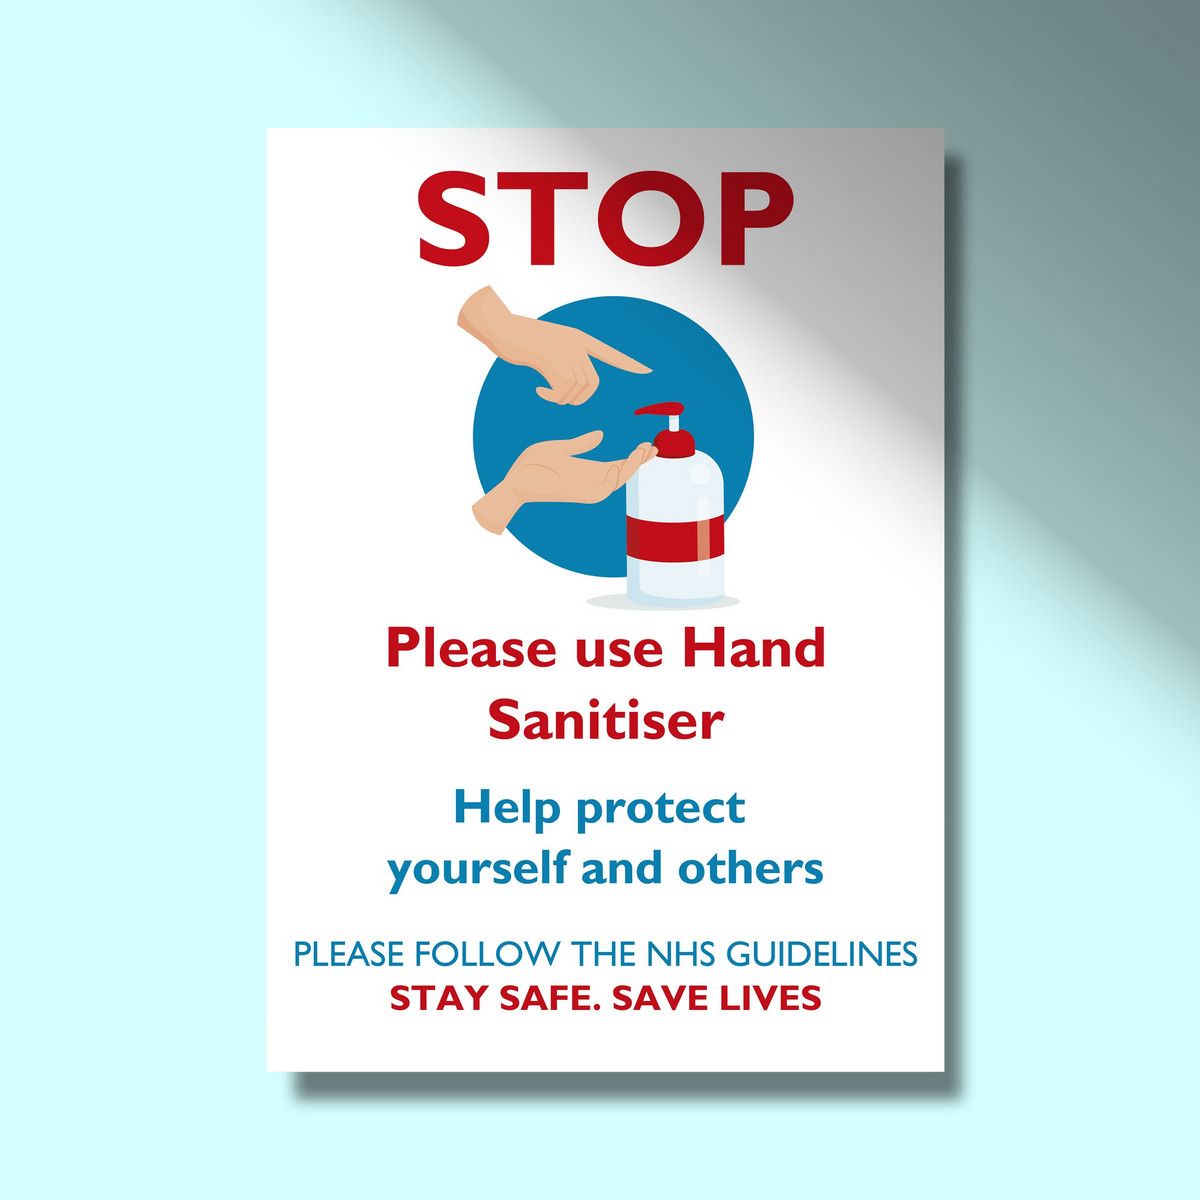 Hand Sanitiser Station - STOP.jpg